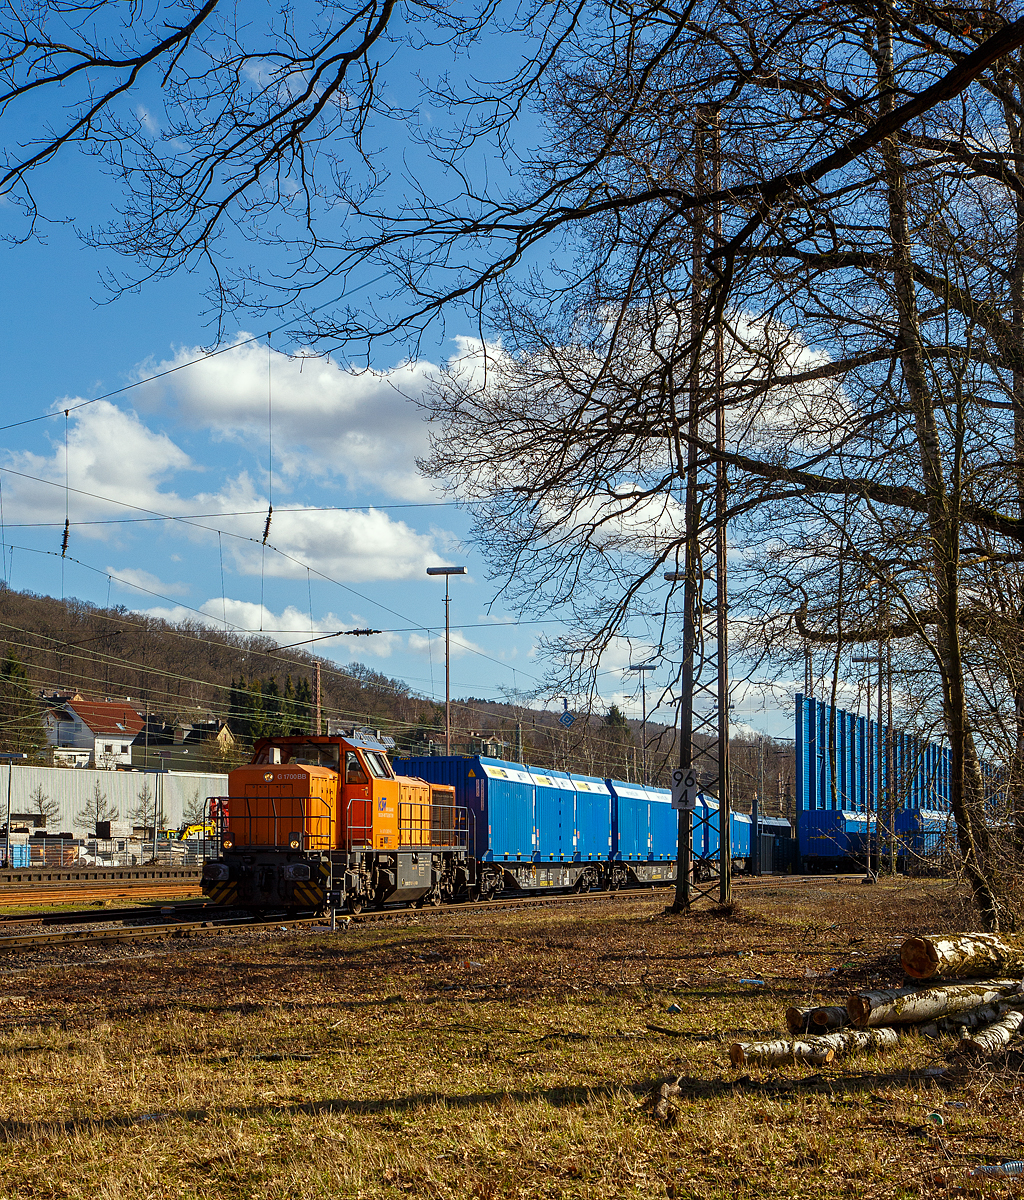 Die KSW 46 bzw. 277 807-4 (92 80 1277 807-4 D-KSW) eine Vossloh G 1700-2 BB der Kreisbahn Siegen-Wittgenstein, rangiert am 23.02.2022 einen Mercer Holz-Holzhackschnitzeln-Zug beim Südwestfalen Container-Terminal (SWCT) in Kreuztal. 

Die Wagen sind vierachsiger Drehgestell-Flachwagen der Gattung Snps 63´ der TRANSWAGGON GmbH, beladen mit je 3 speziellen 21 Fuß Container befüllt mit Holzhackschnitzeln. Die Hackschnitzel werden durch LKW´s angeliefert Terminal und gesammelt. Nach der Ankunft des Leerzuges werden die leeren Container mittels Reachstacker vom Wagen gehoben, durch einen Radlader mit Hackschnitzel beladen und wieder durch Reachstacker auf den Wagon geladen.

Die Gesellschafter der SWCT sind zu jeweils 50% die Kombiverkehr Deutsche Gesellschaft für kombinierten Güterverkehr mbH & Co. KG und die KSW Kreisbahn Siegen-Wittgenstein GmbH.